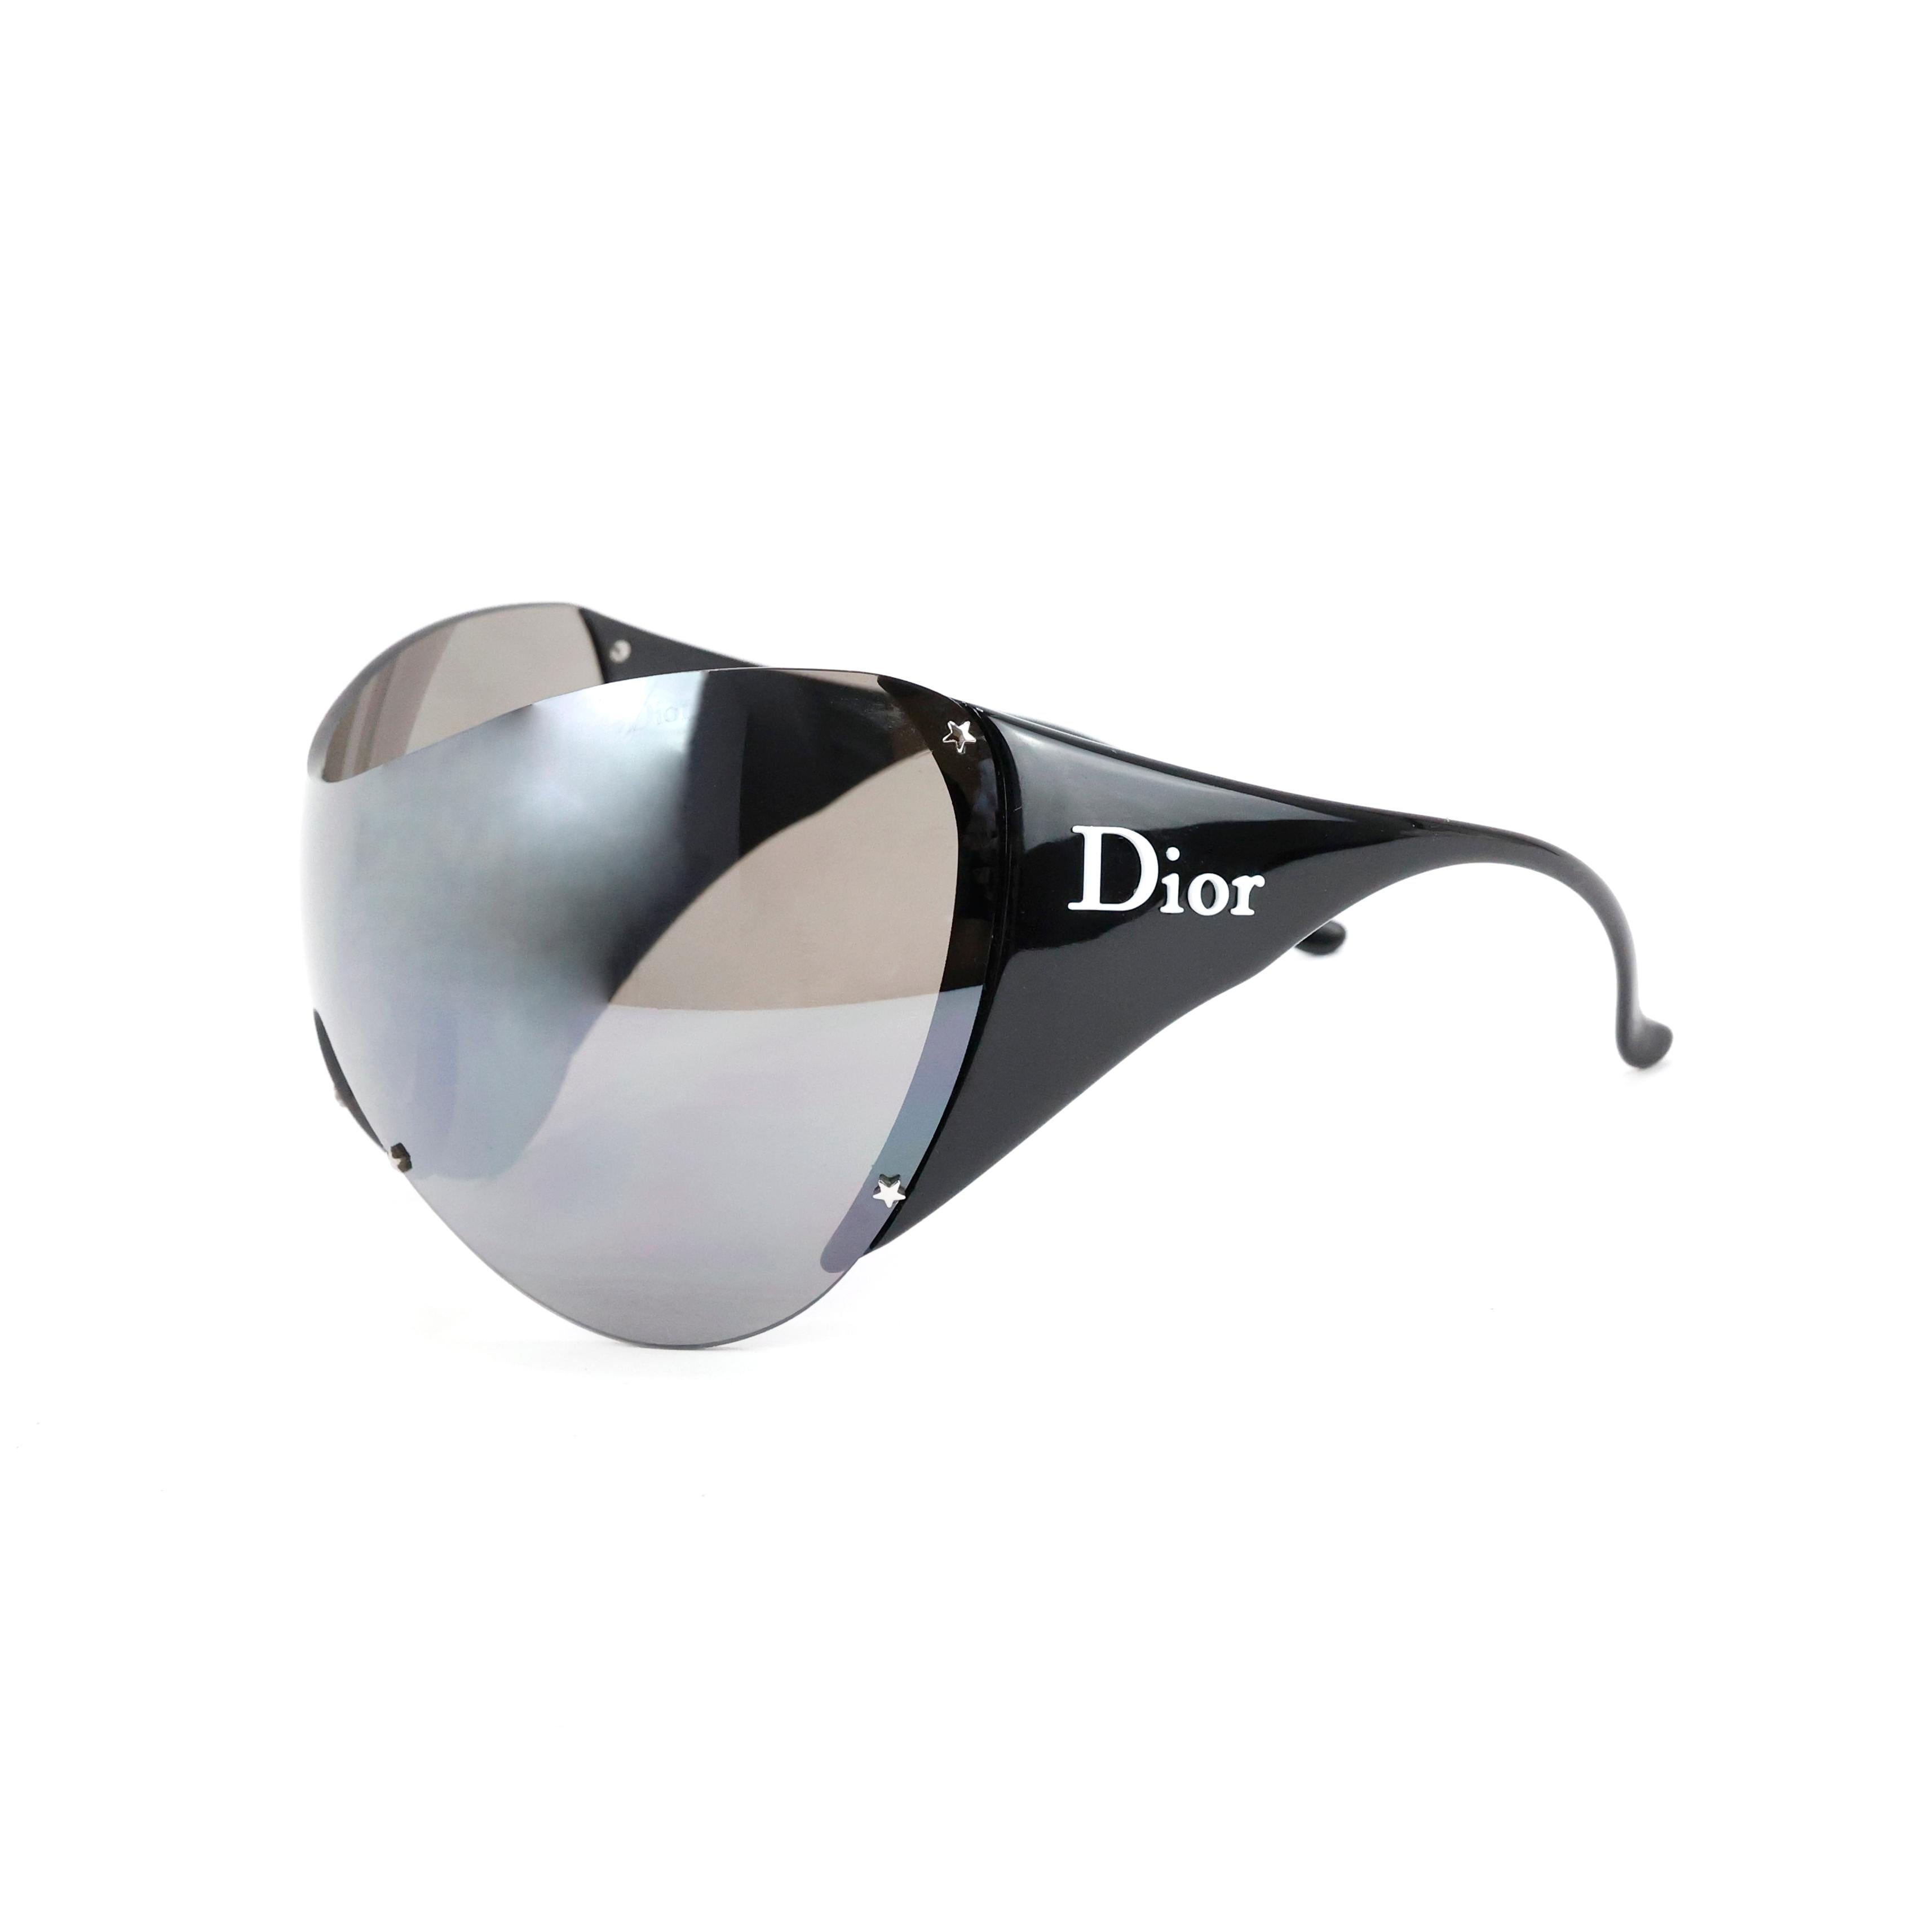 Christian Dior by John Galliano Ski 1 sunglasses In Excellent Condition For Sale In Bressanone, IT